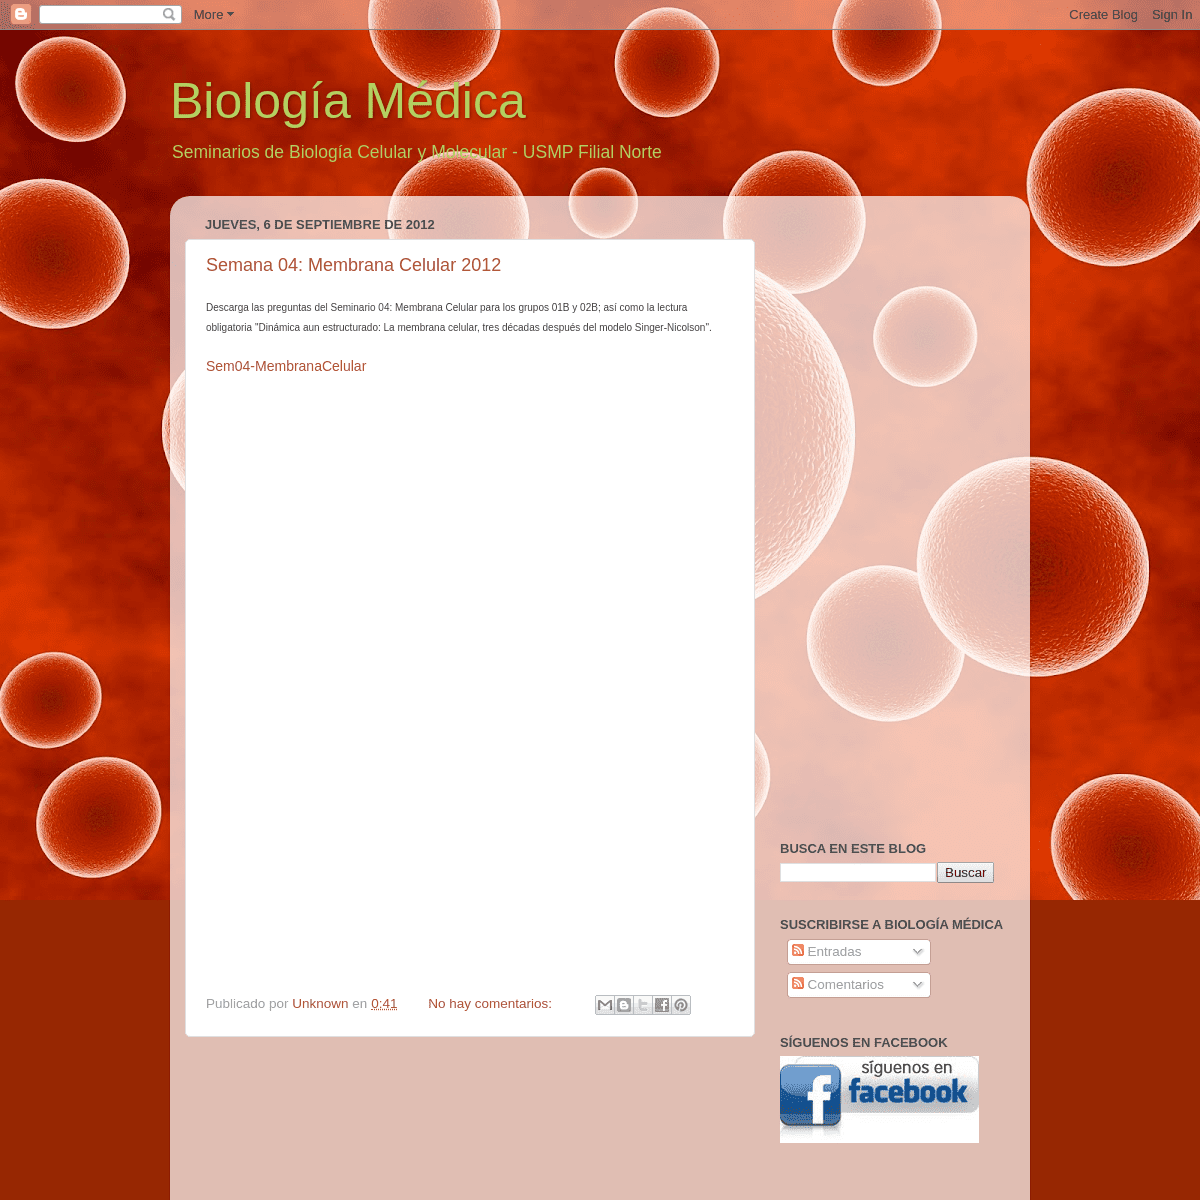 A complete backup of biologiamedica.blogspot.com